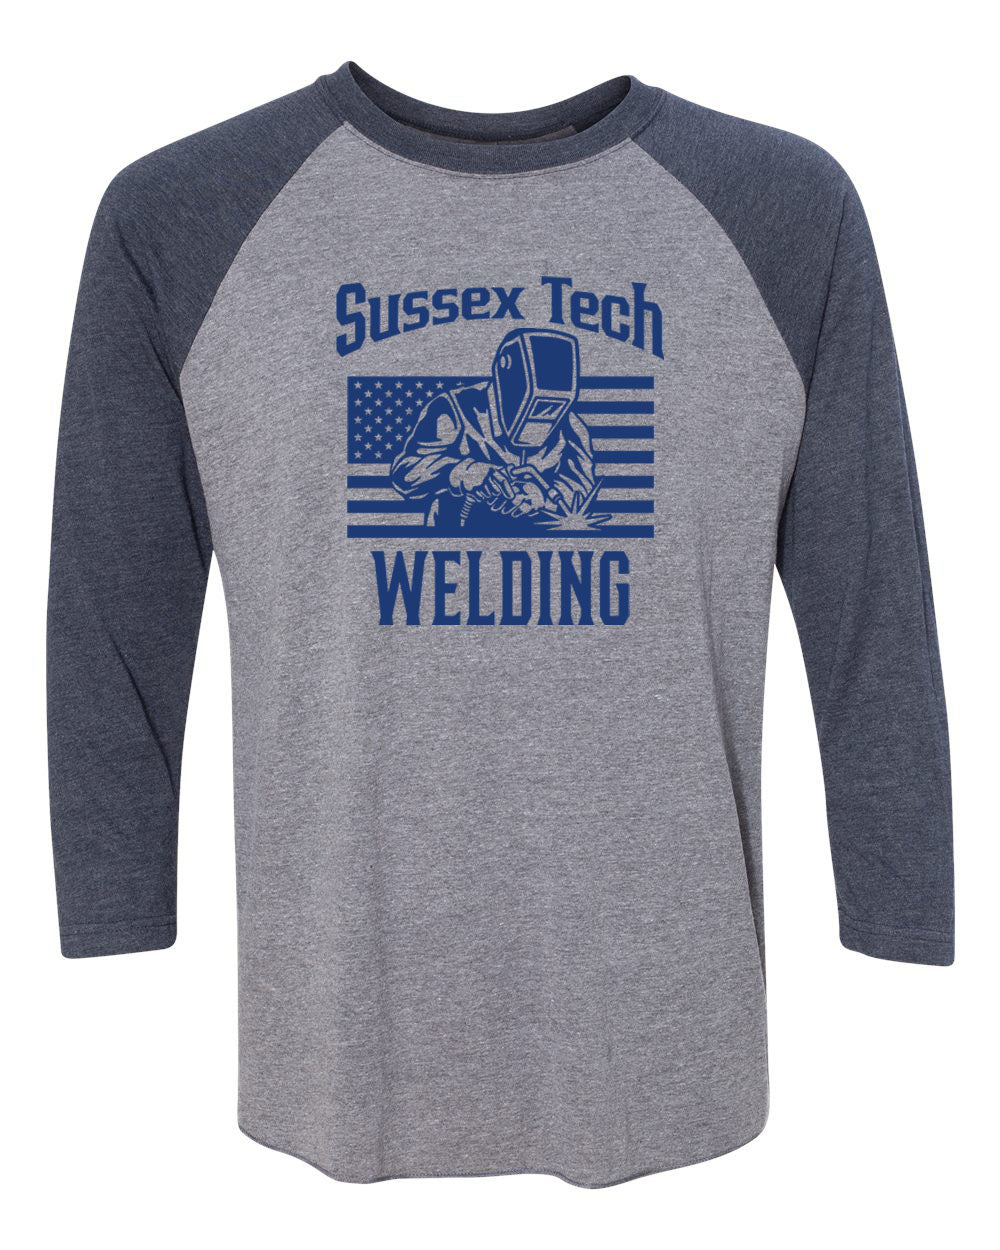 Sussex Tech Welding design 1 raglan shirt